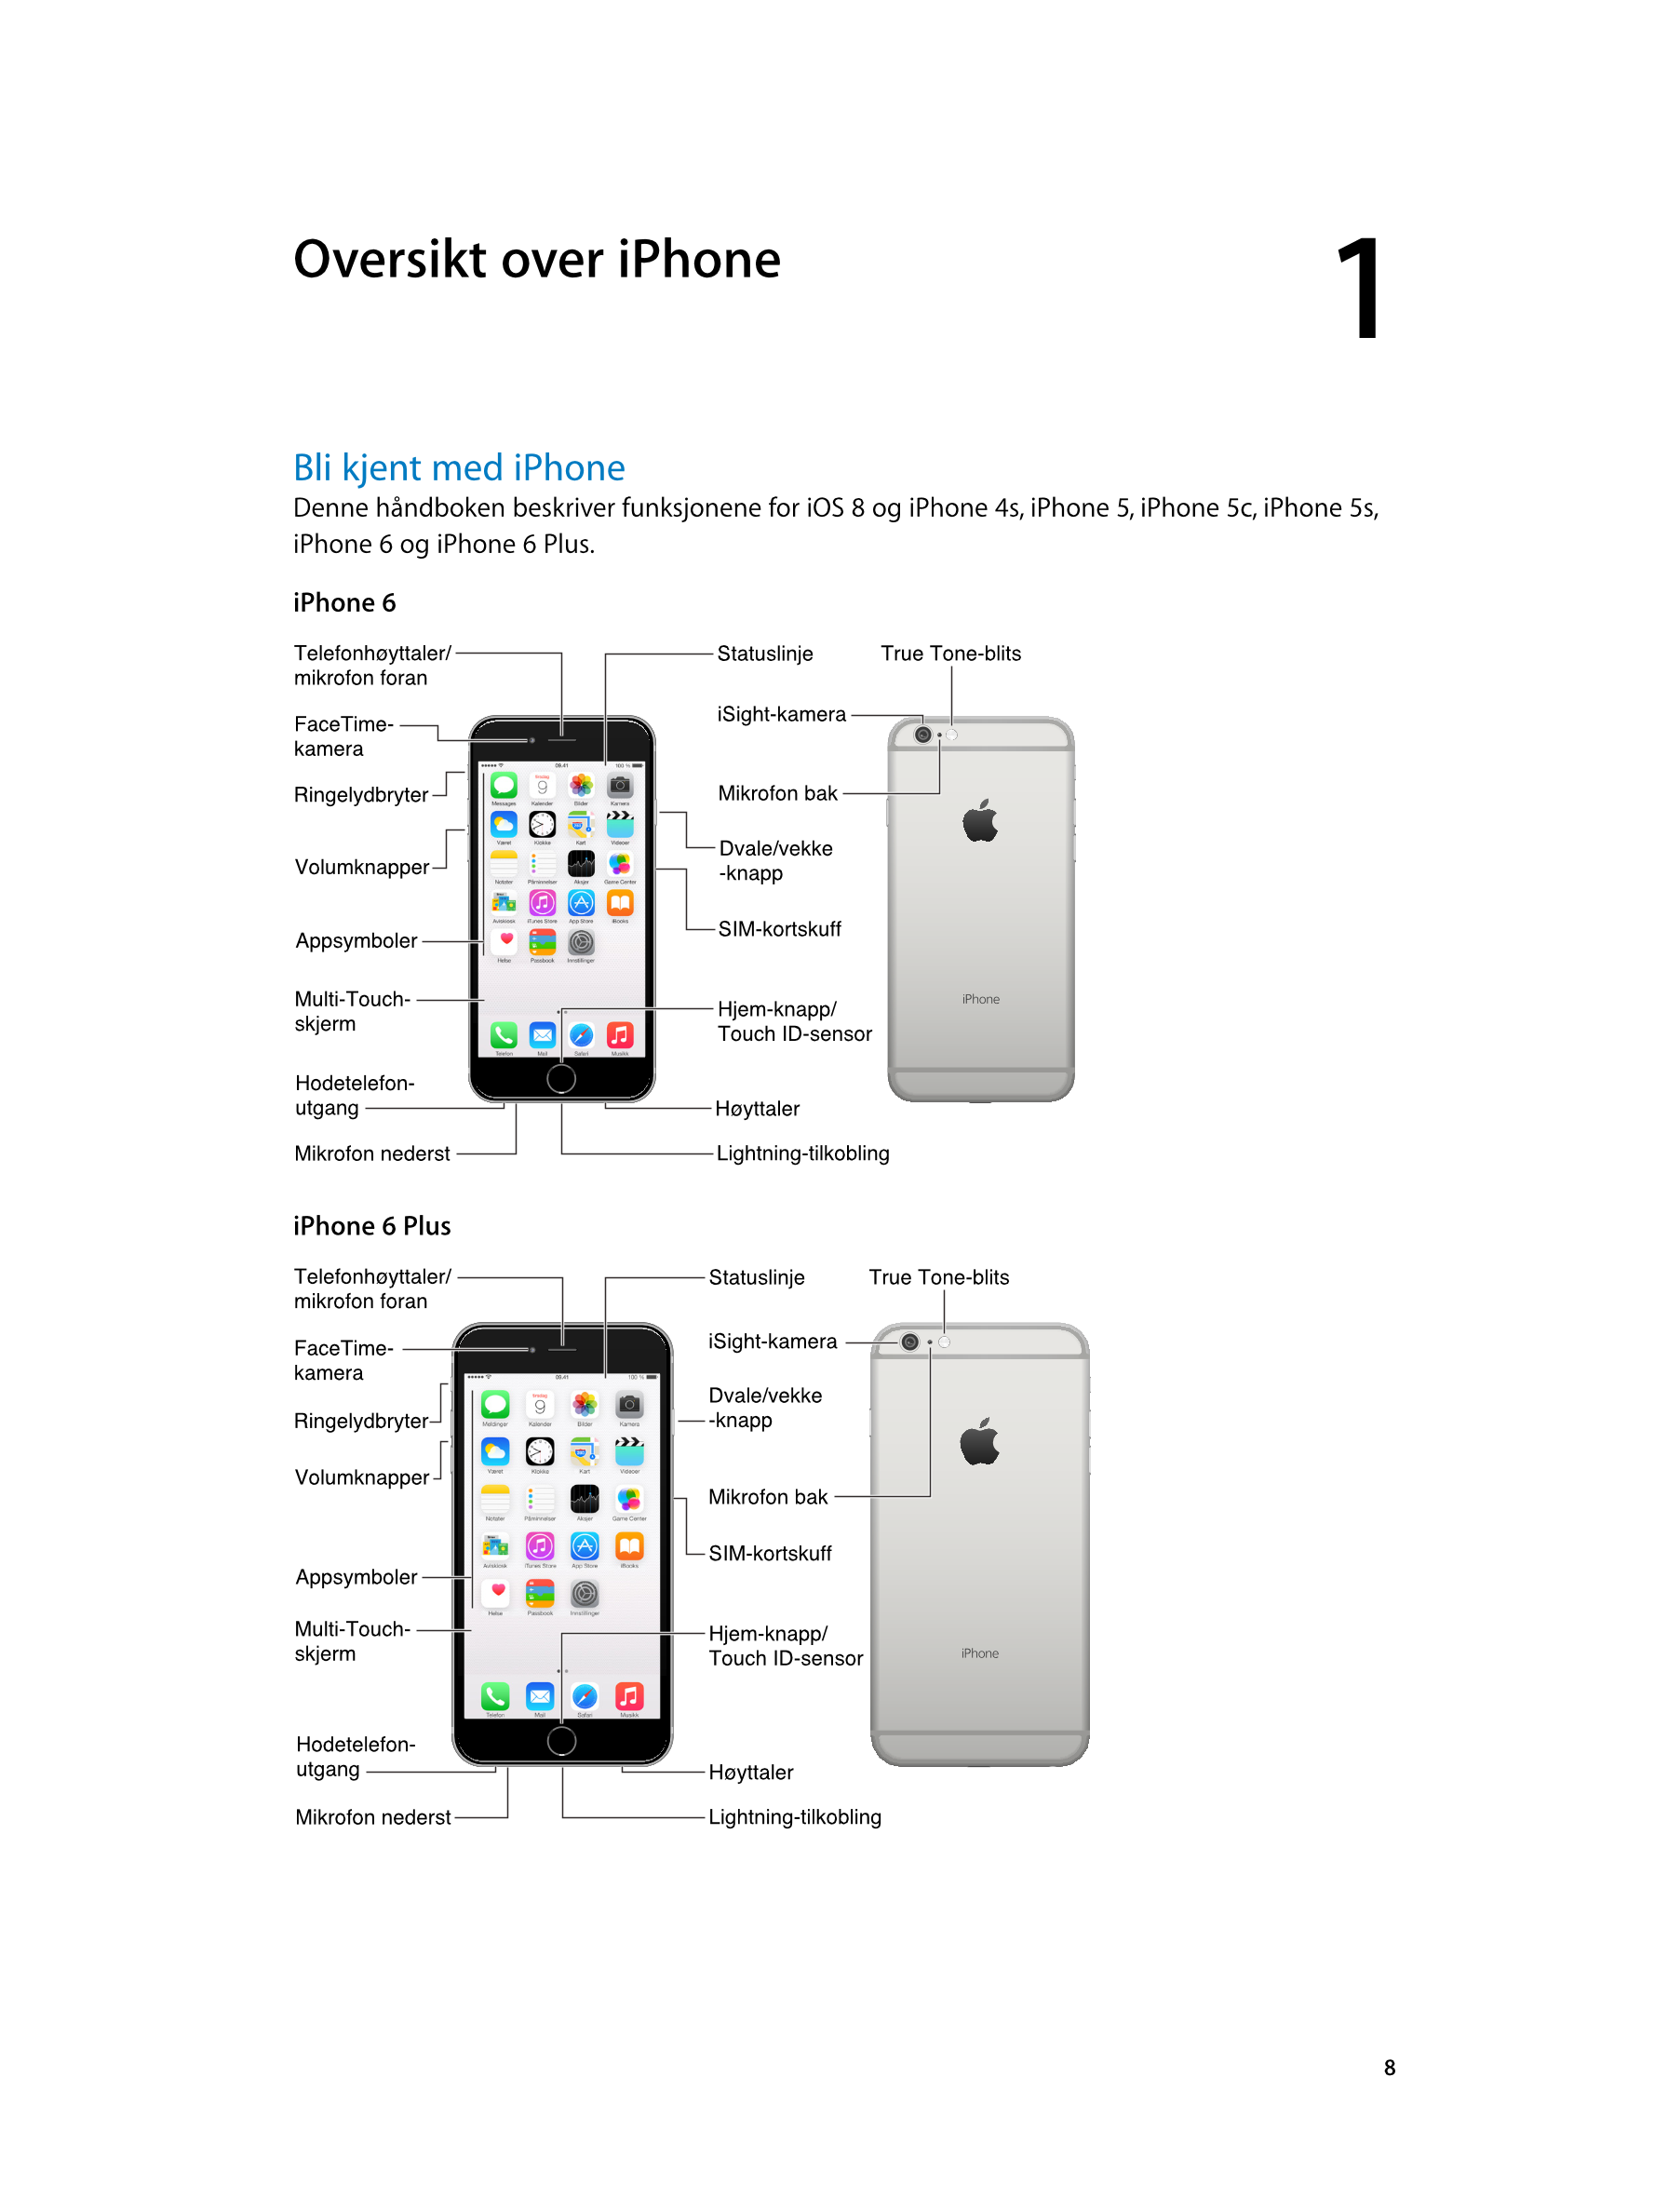   Oversikt over iPhone 1
Bli kjent med iPhone
Denne håndboken beskriver funksjonene for iOS 8 og iPhone 4s, iPhone 5, iPhone 5c,